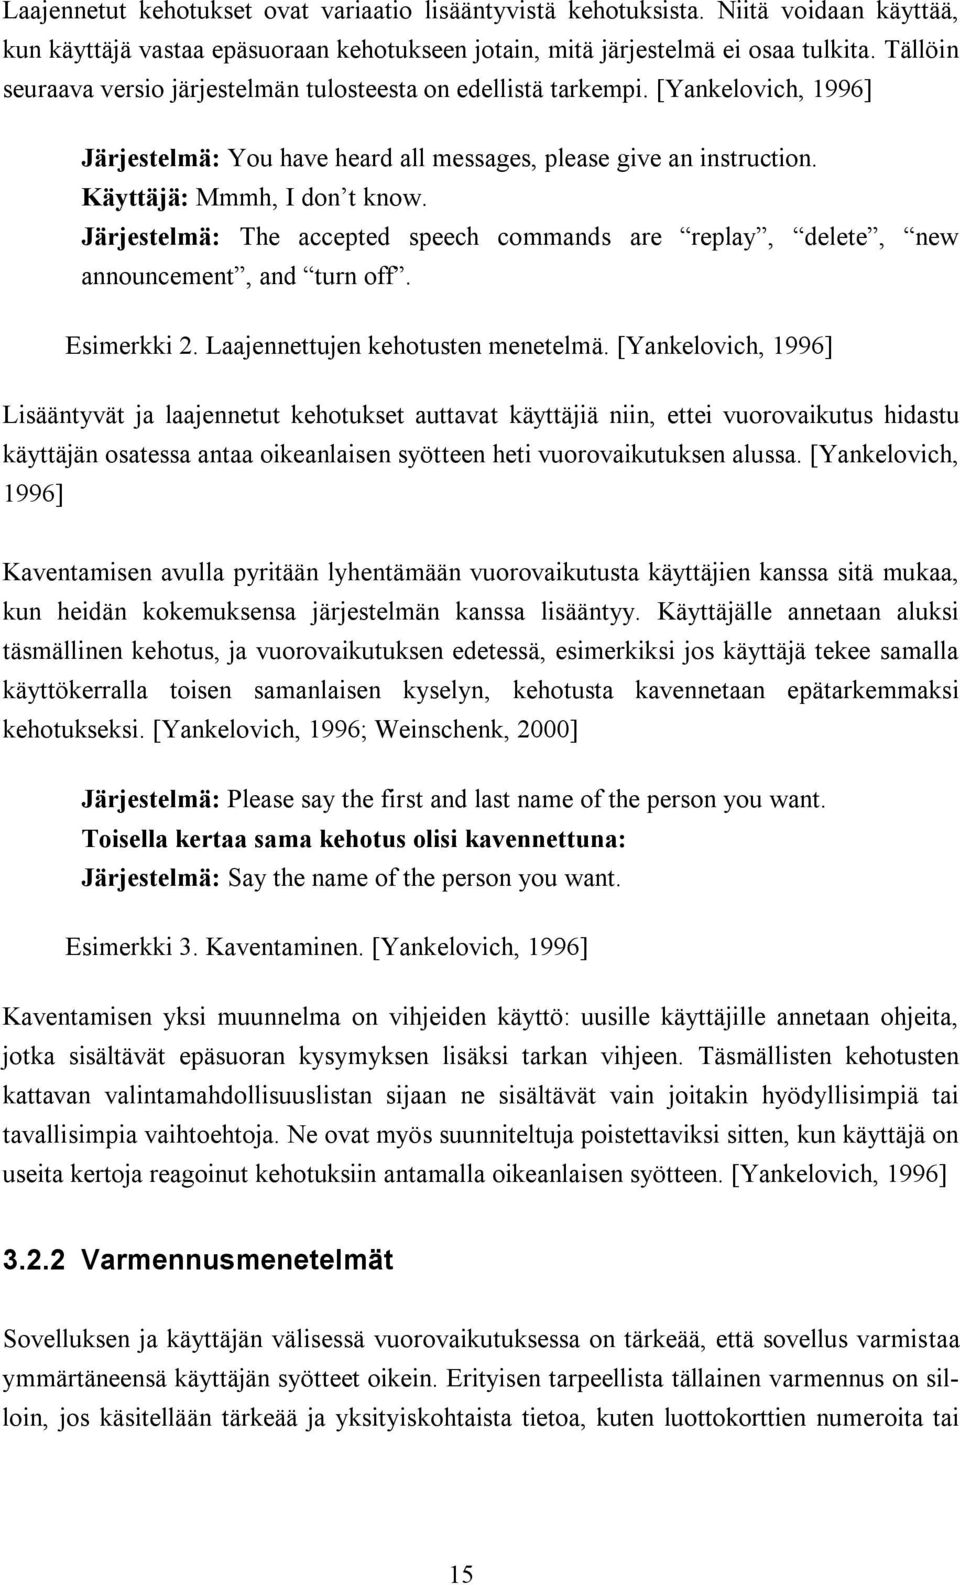 Järjestelmä: The accepted speech commands are replay, delete, new announcement, and turn off. Esimerkki 2. Laajennettujen kehotusten menetelmä.